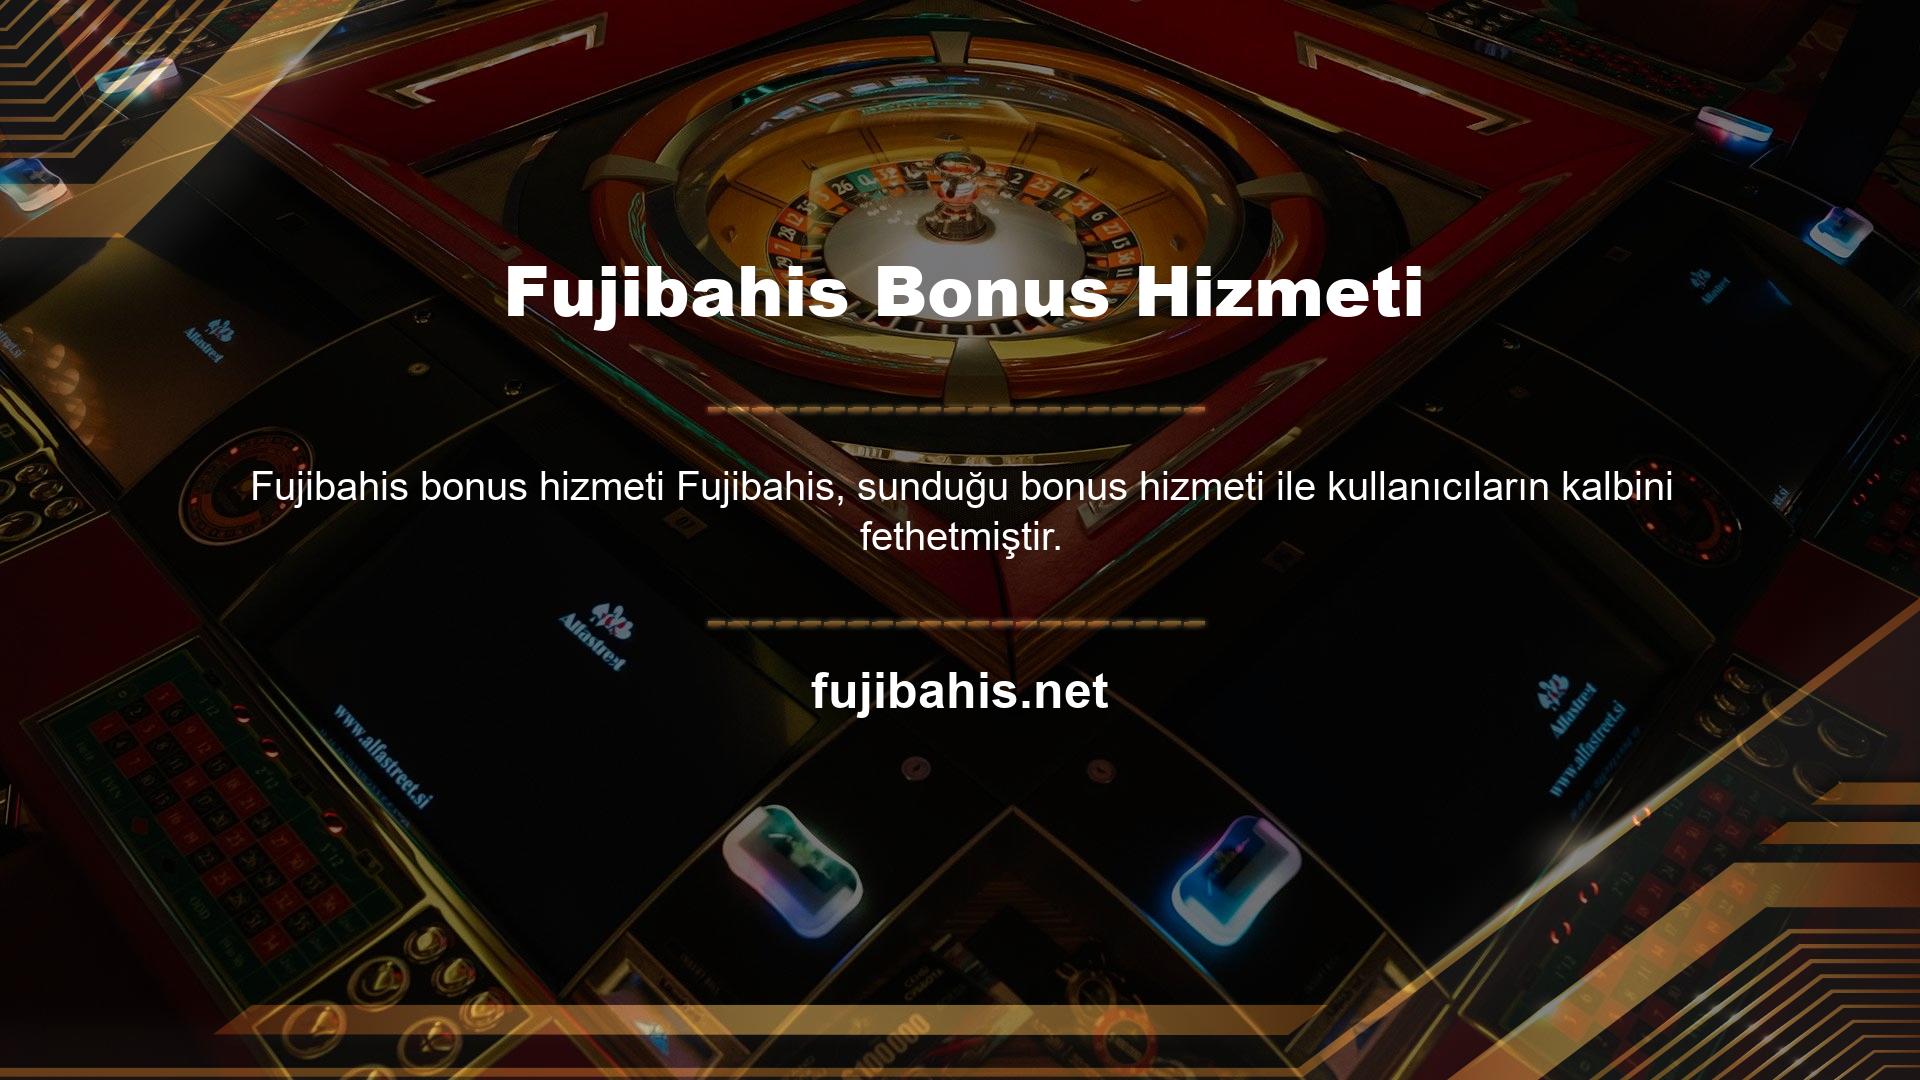 Fujibahis bahis sitesi para yatırma ve para yatırma işlemleri yapan tüm kullanıcılara bonus içeriklerden yararlanma imkanı sunmaktadır